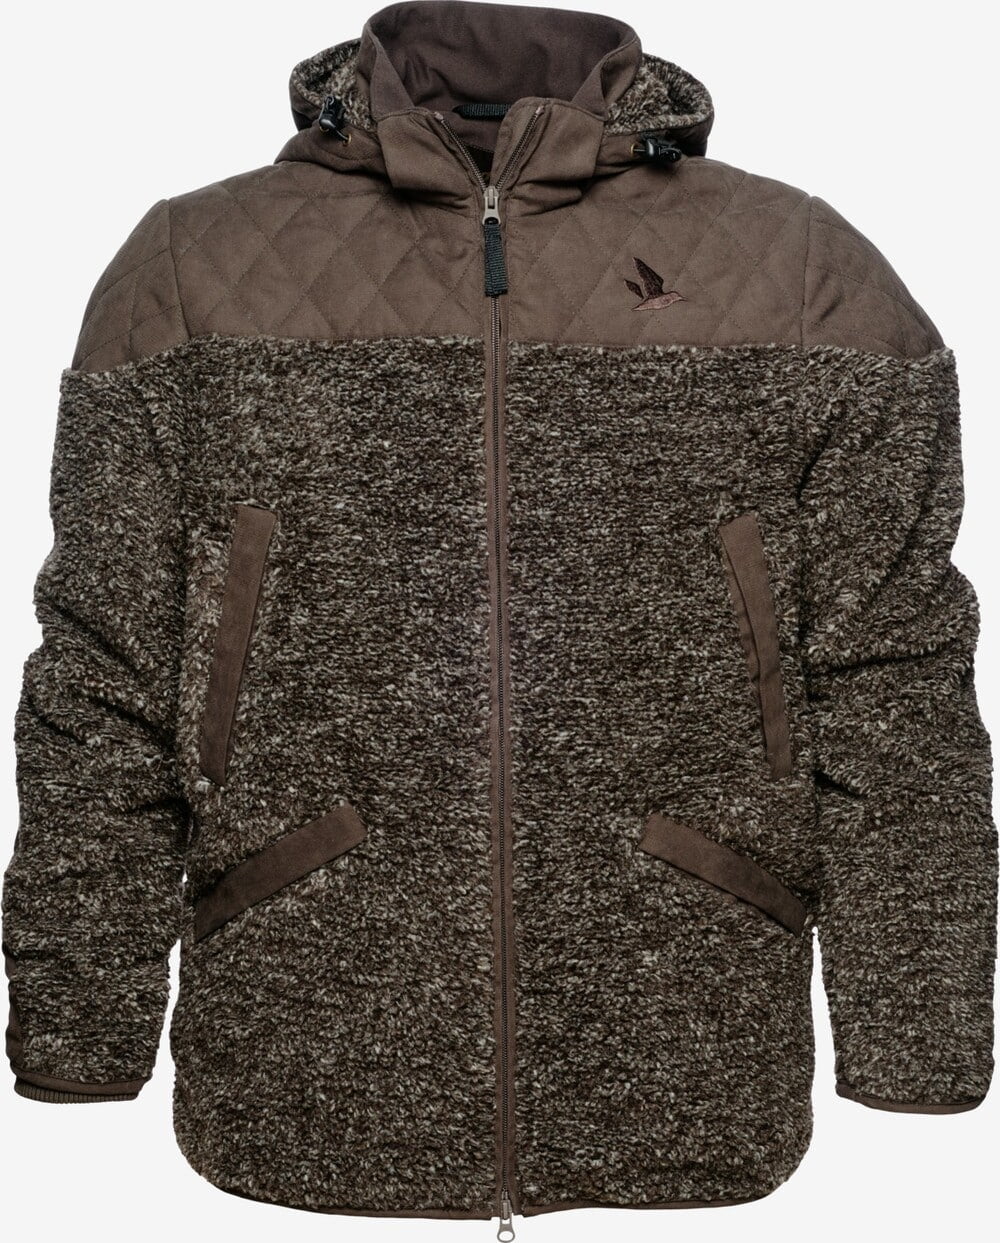 Seeland - Tyst jakke (Moose brown) - 48 (S)